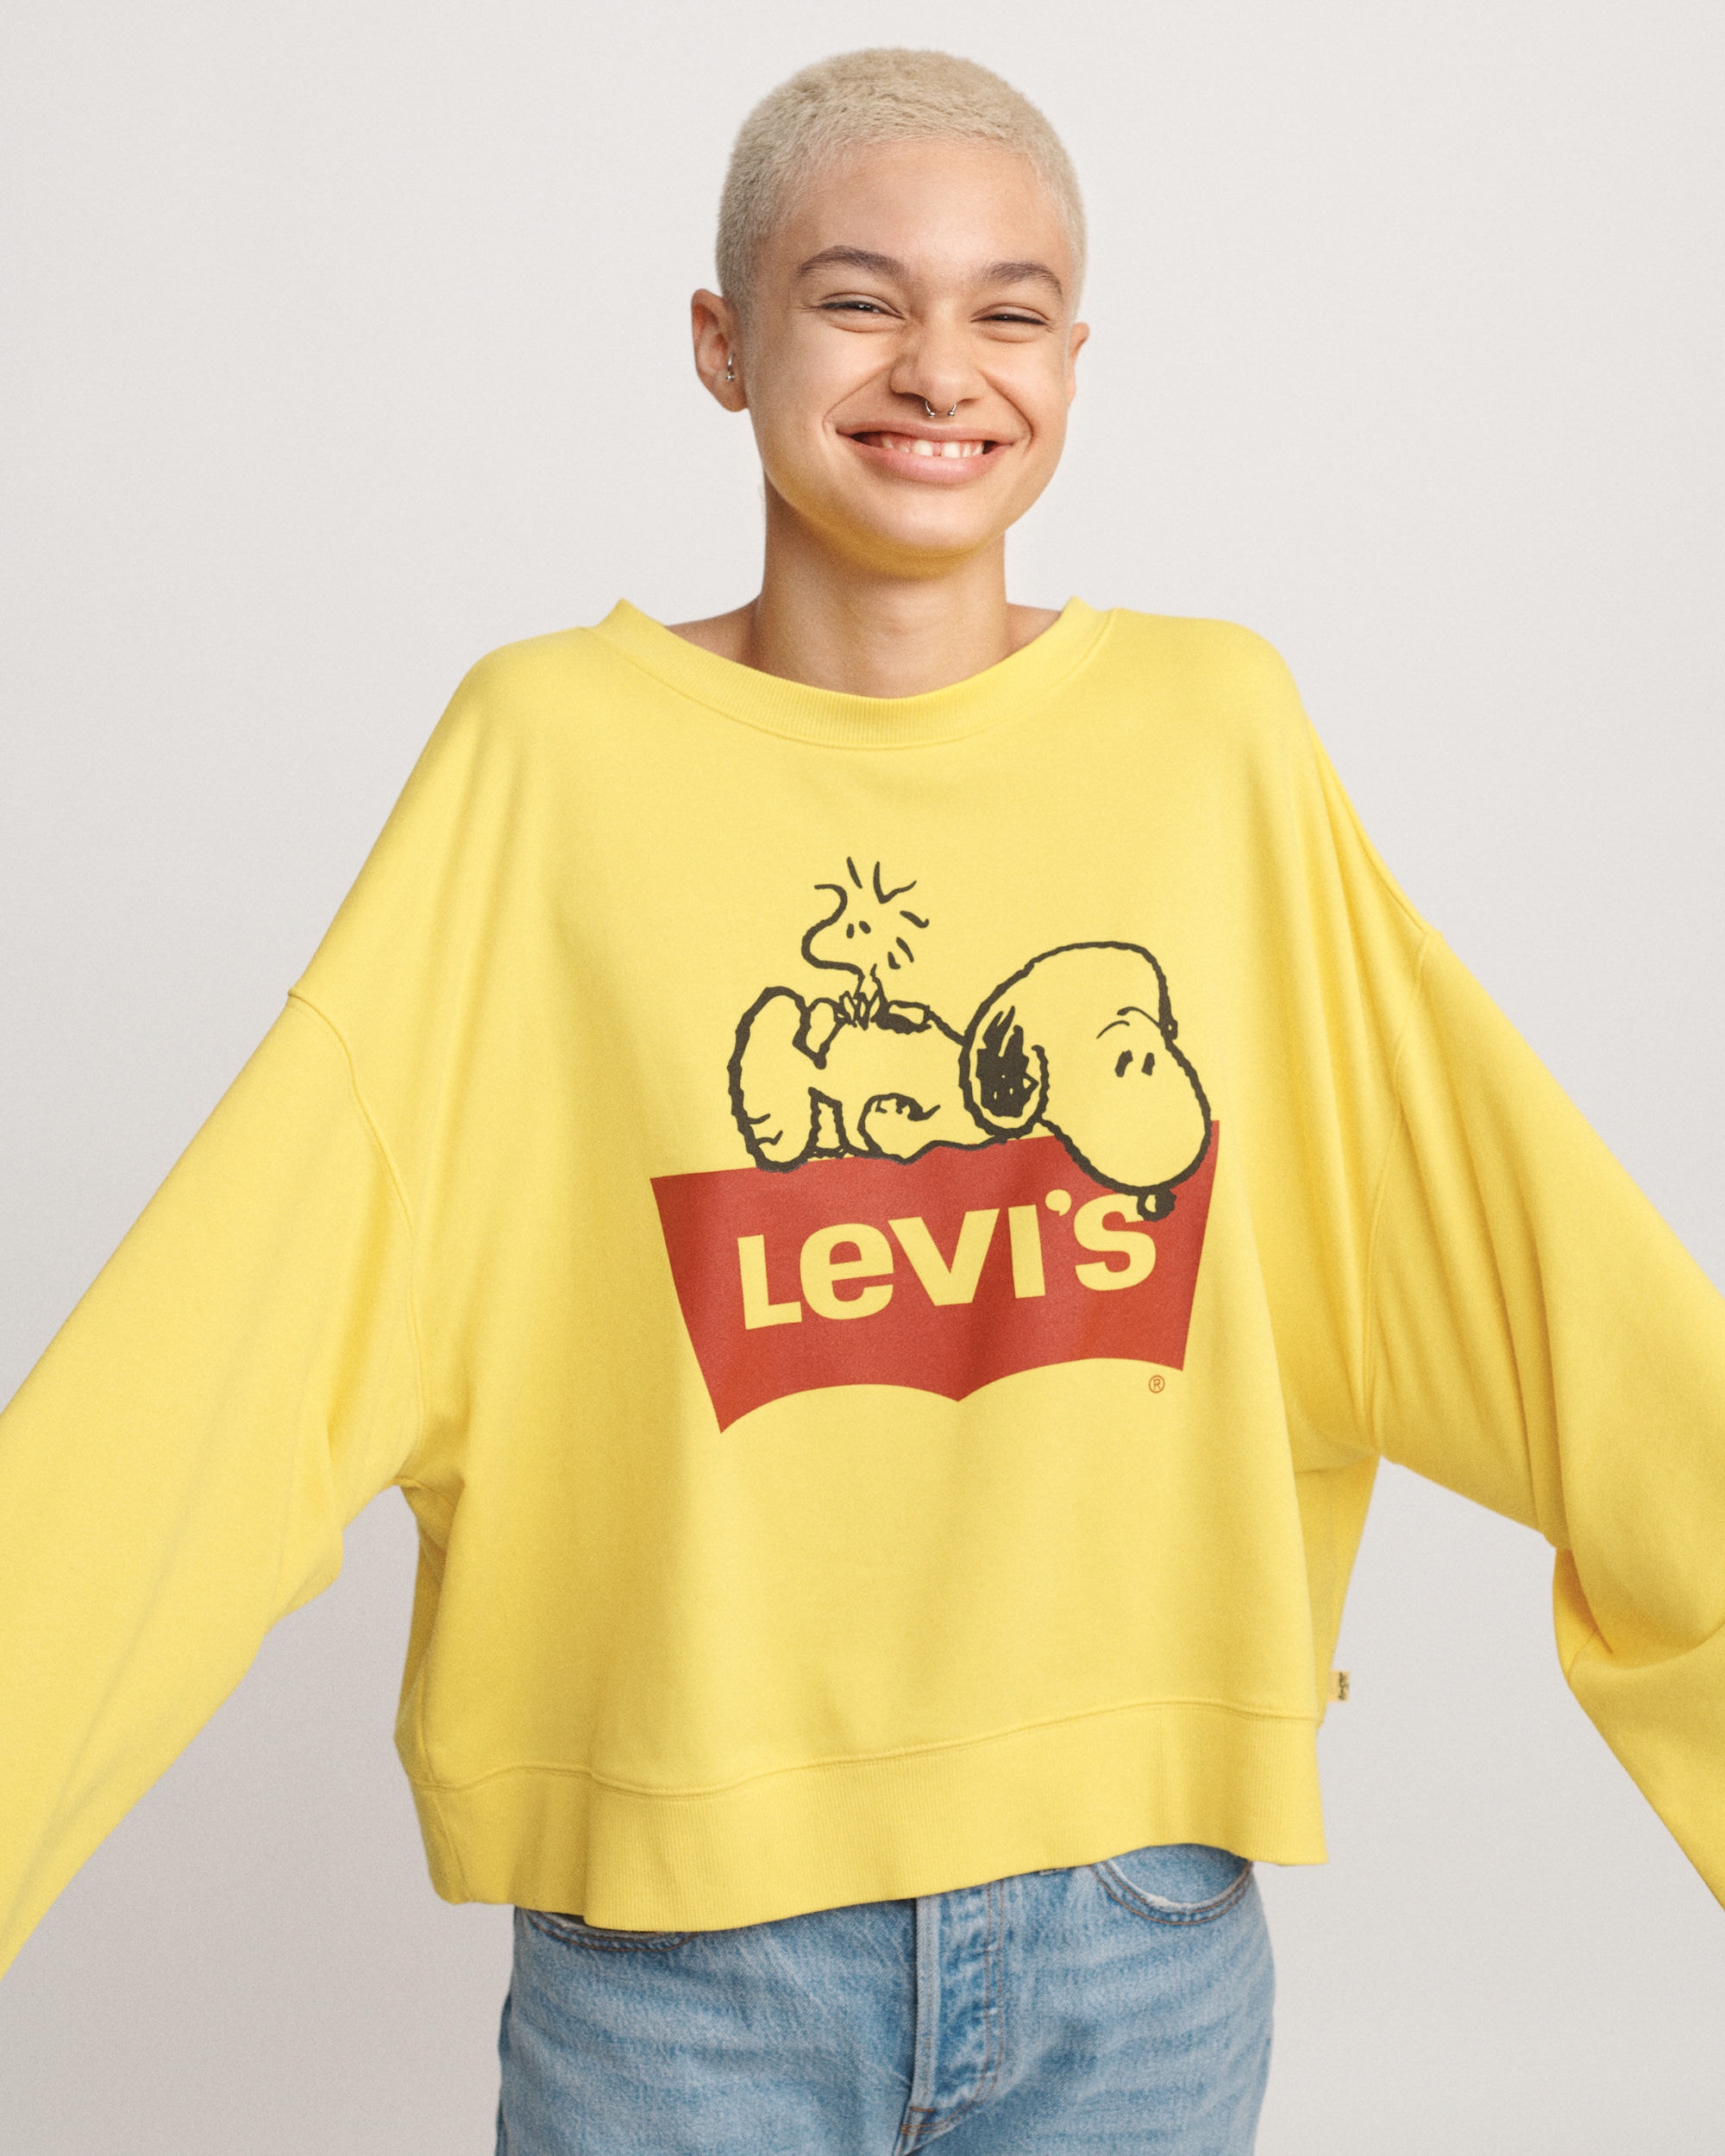 Levi's x《Peanuts》2019 春夏聯乘系列上架